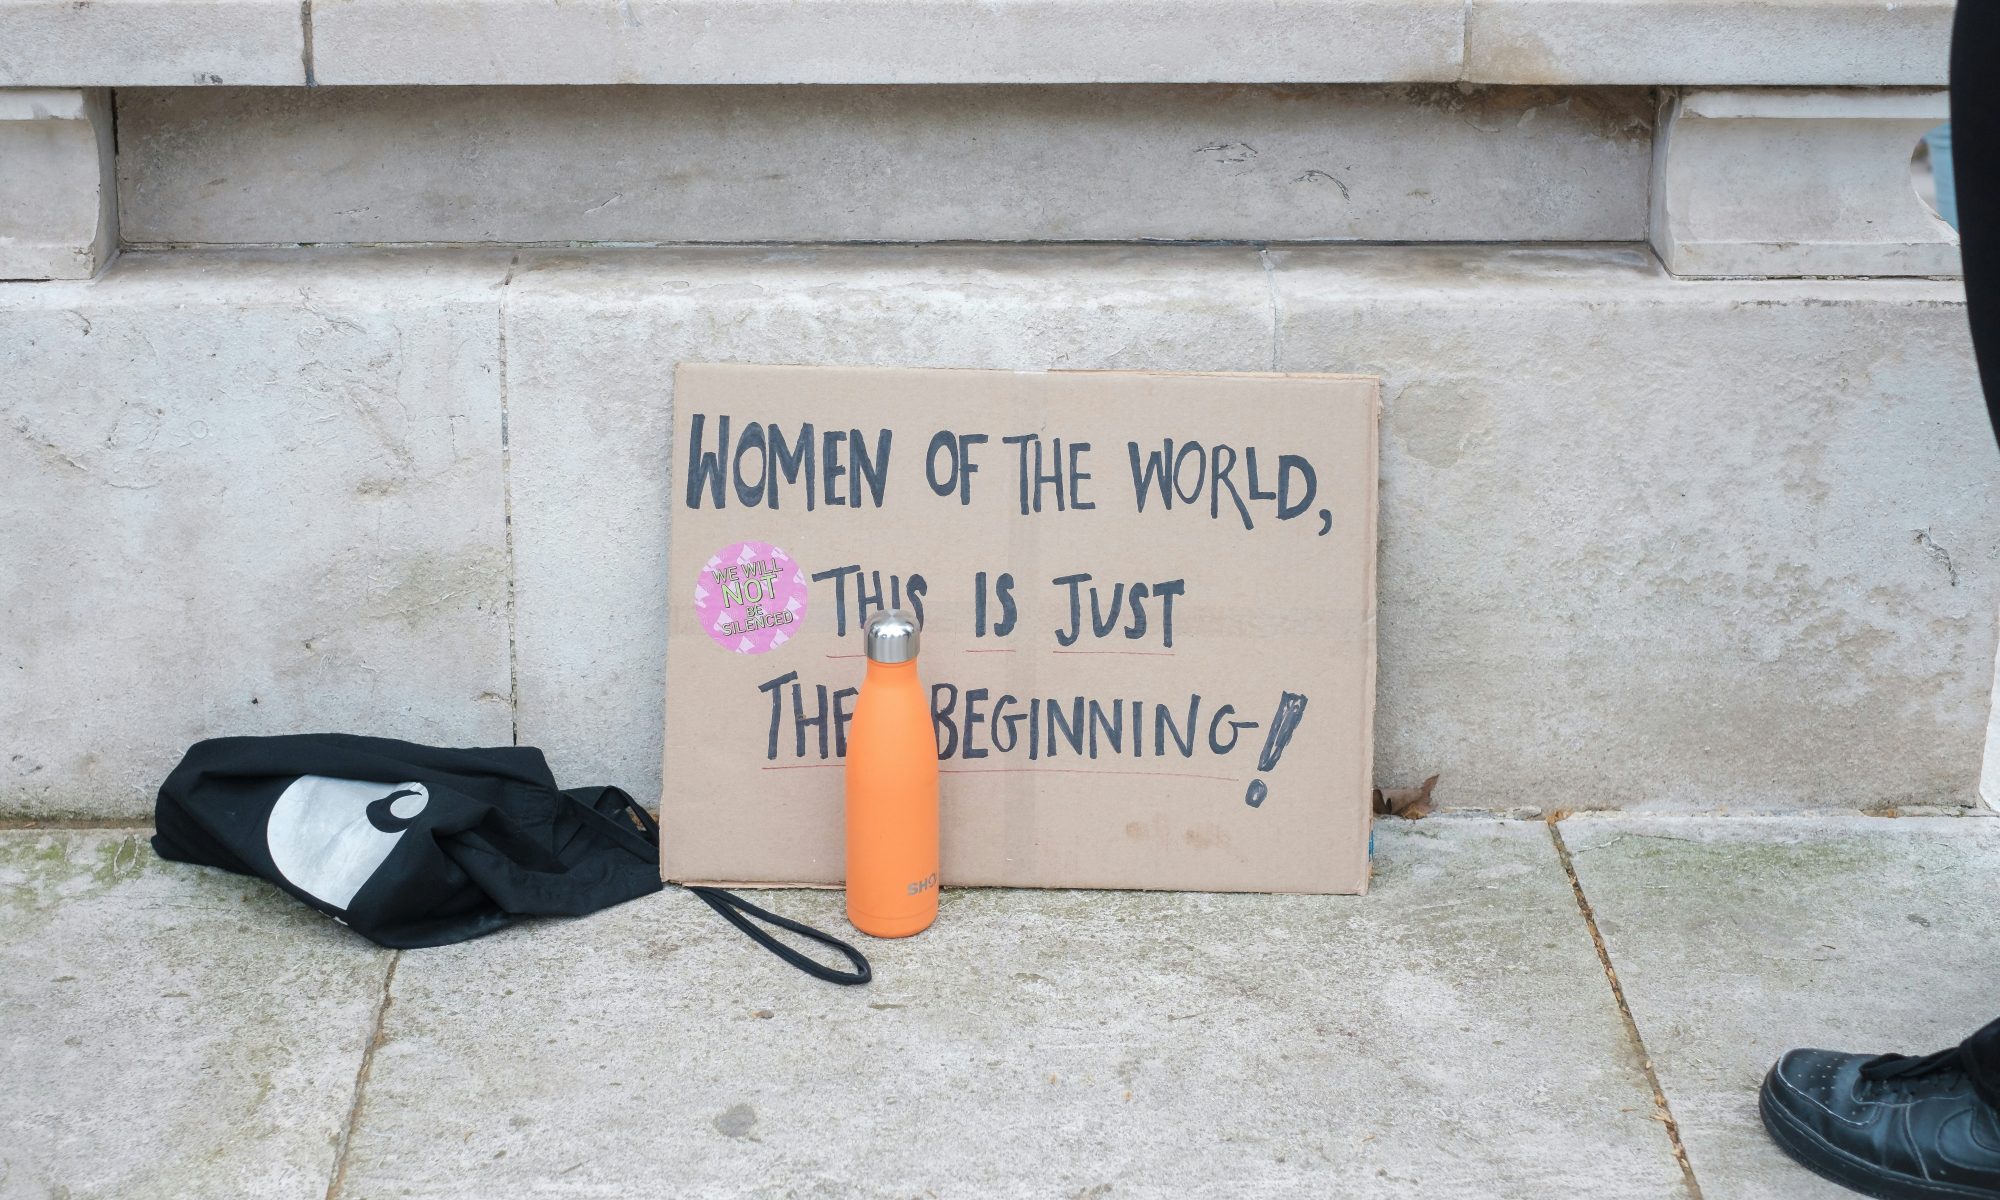 Plakatschild steht auf dem Boden. Drauf handschriftlich: "Women of the world, this is just the beginning! - auf detusch: Frauen der Welt, das ist erst der Anfang.